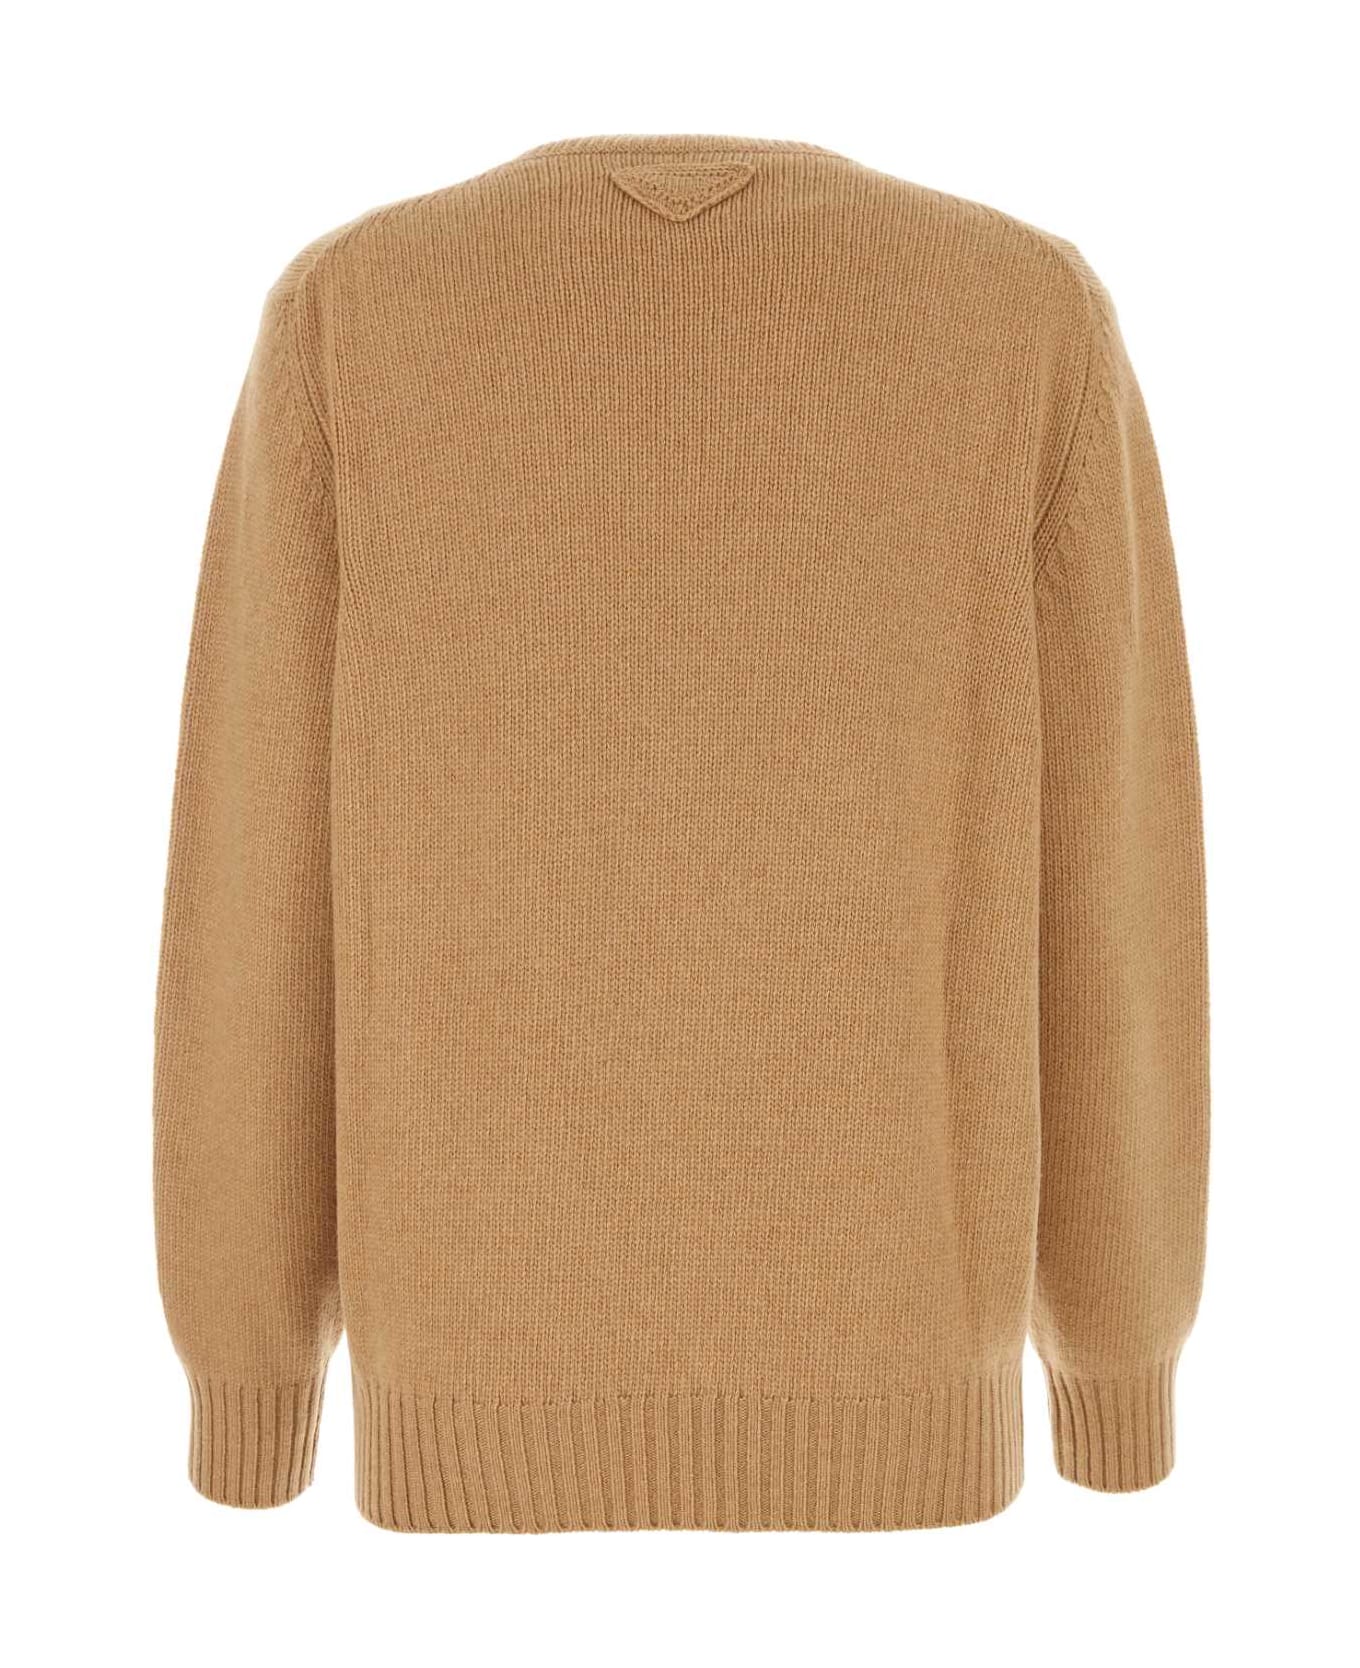 Prada Camel Wool Blend Sweater - CAMMELLO